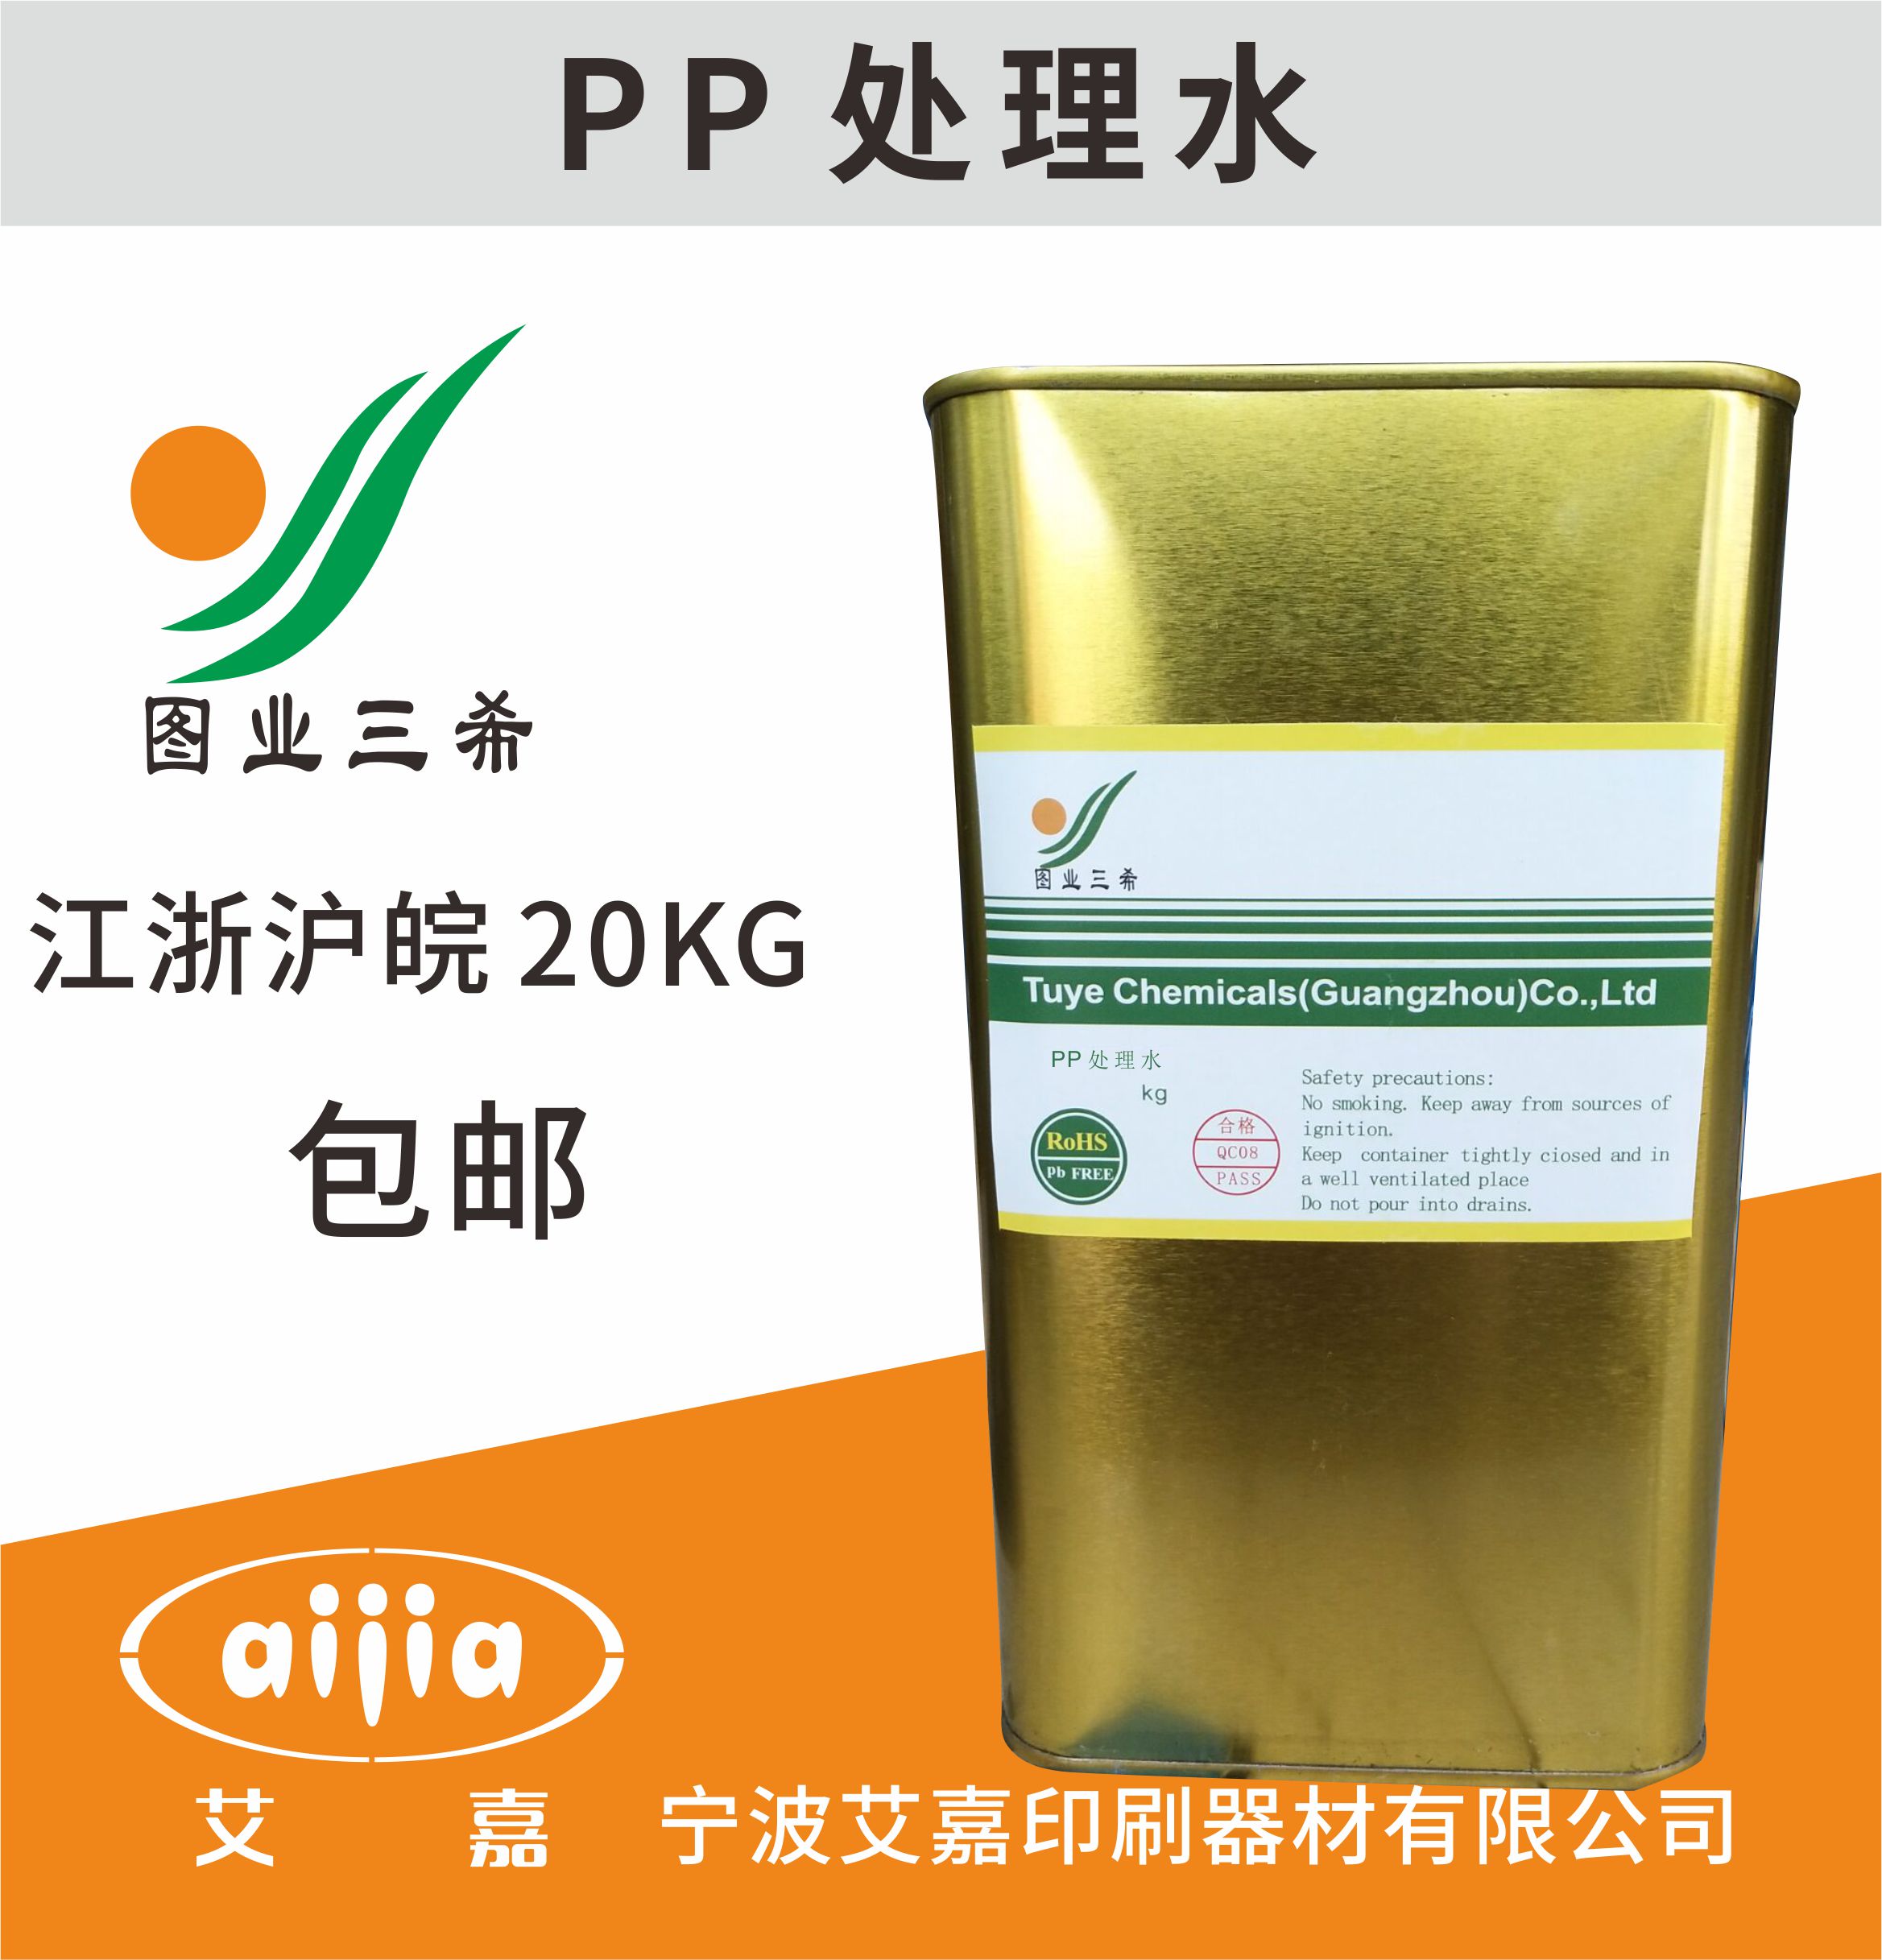 图业PP表面处理剂PP水PE表面处理剂 增加油墨附着力PP处理水1KG